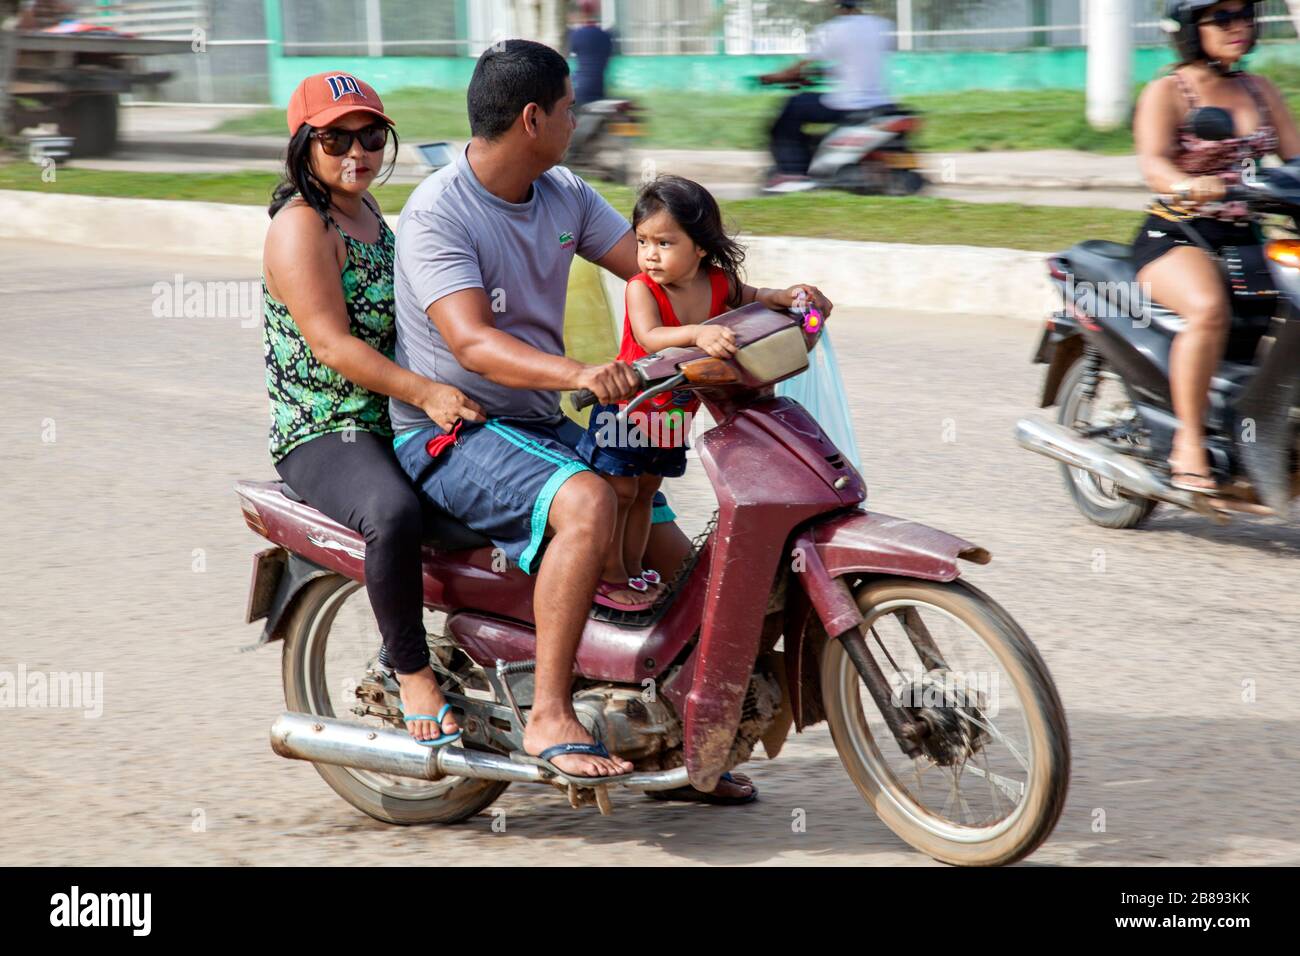 Tres arriba, mamá, papá y niño en una moto que conduce sin cascos, en Leticia, Amazon, Colombia, América del Sur. Foto de stock